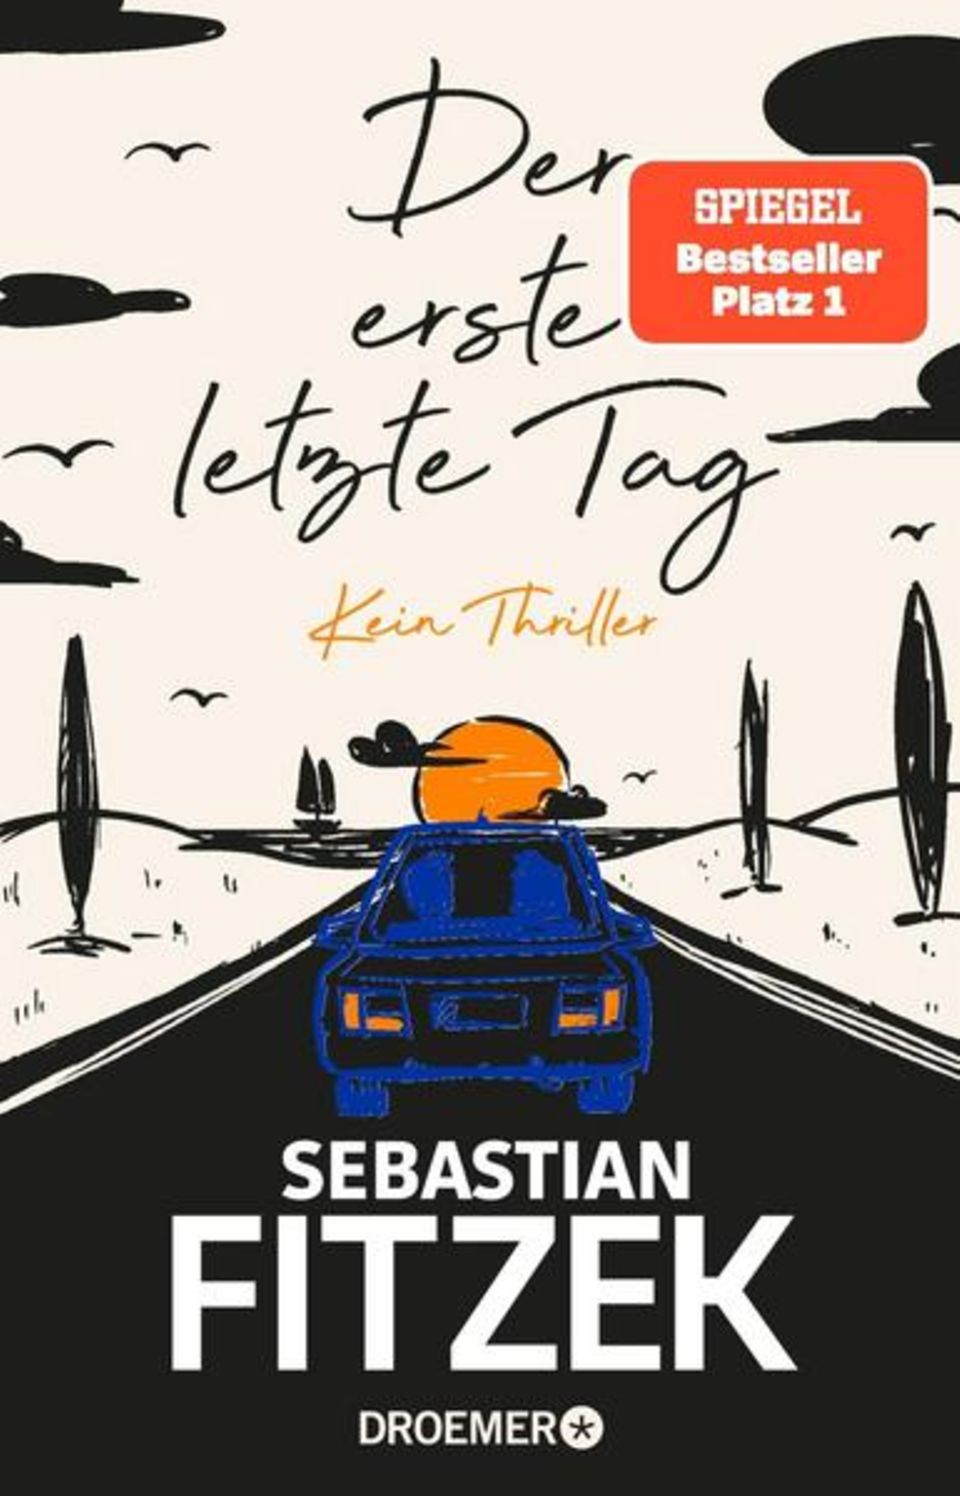 Buch-Charts Platz 7: Sebastian Fitzek "Der erste letzte Tag"